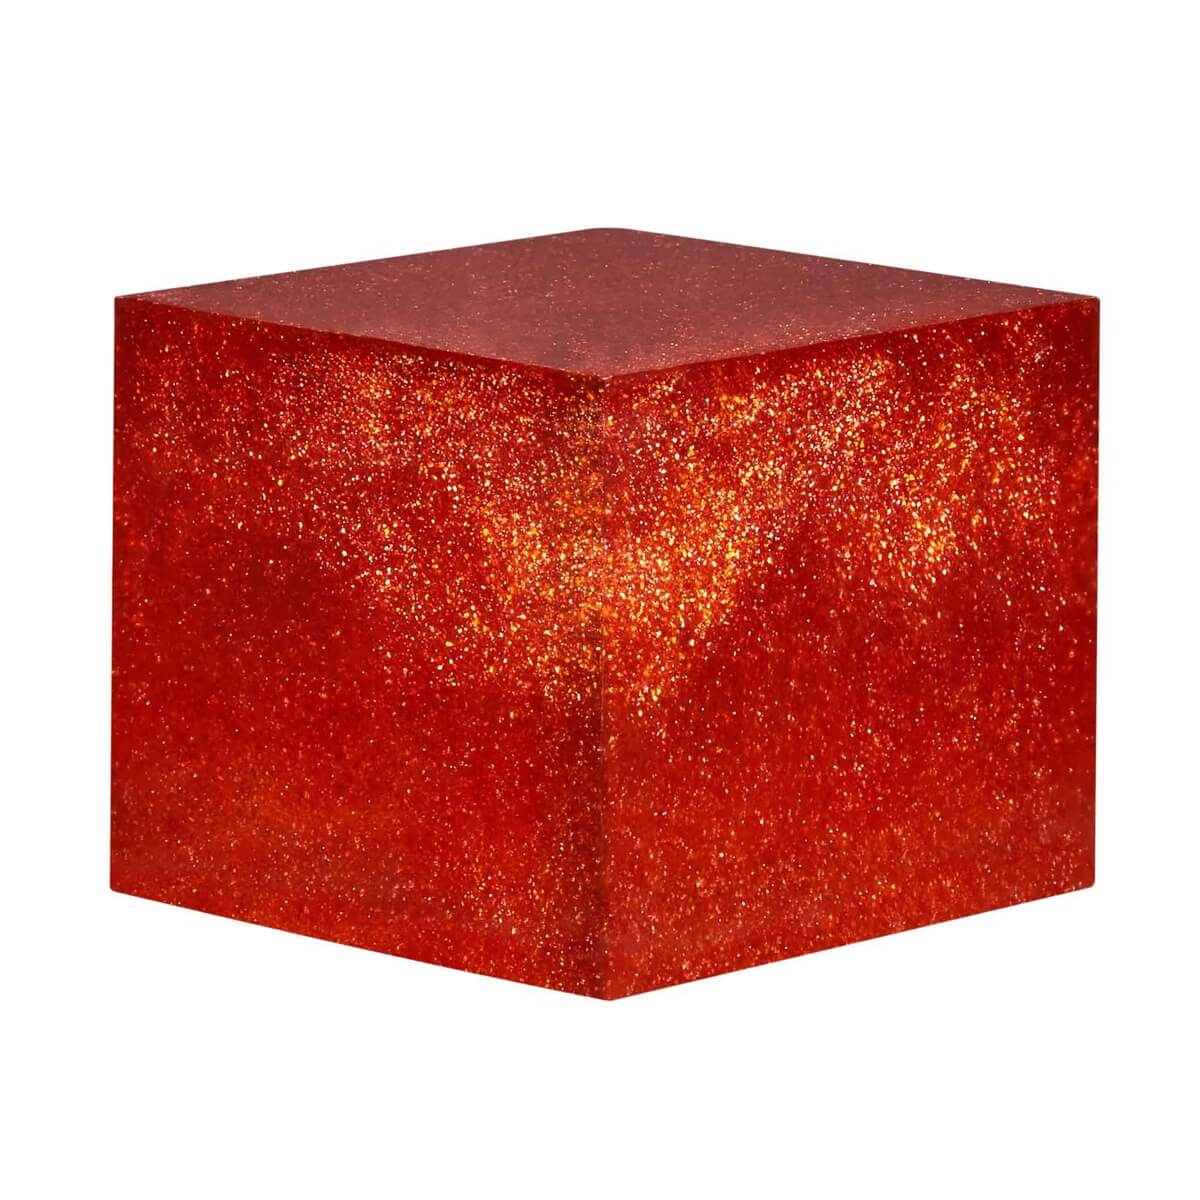 Red Terracotta Grogged Marl Powder - Bluematchbox Potters Supplies Ltd